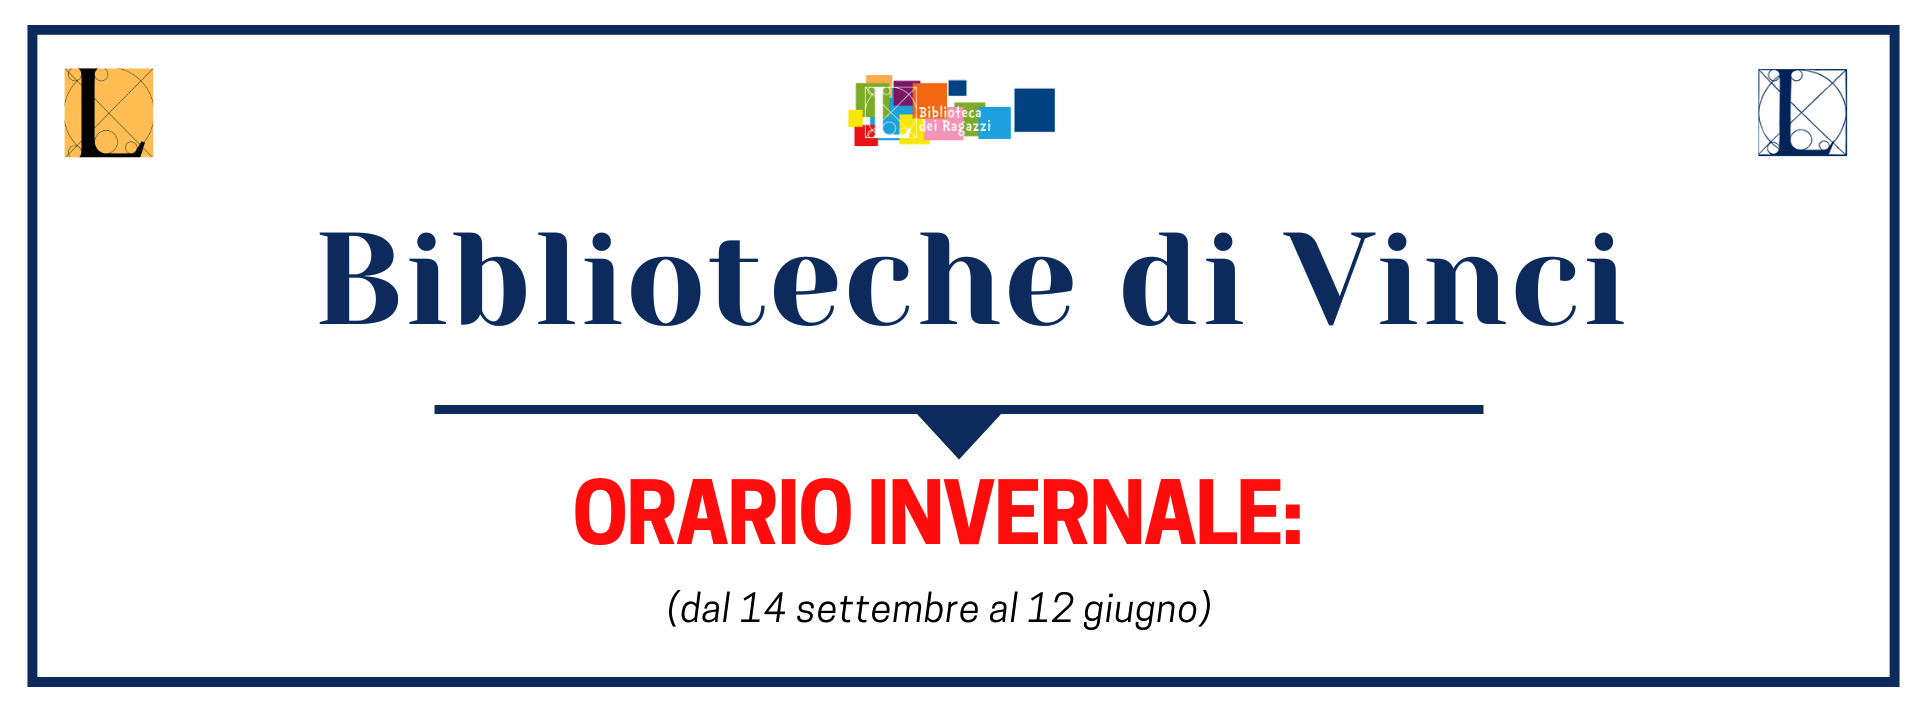 Biblioteche di Vinci: orario invernale (dal 14 settembre al 12 giugno)